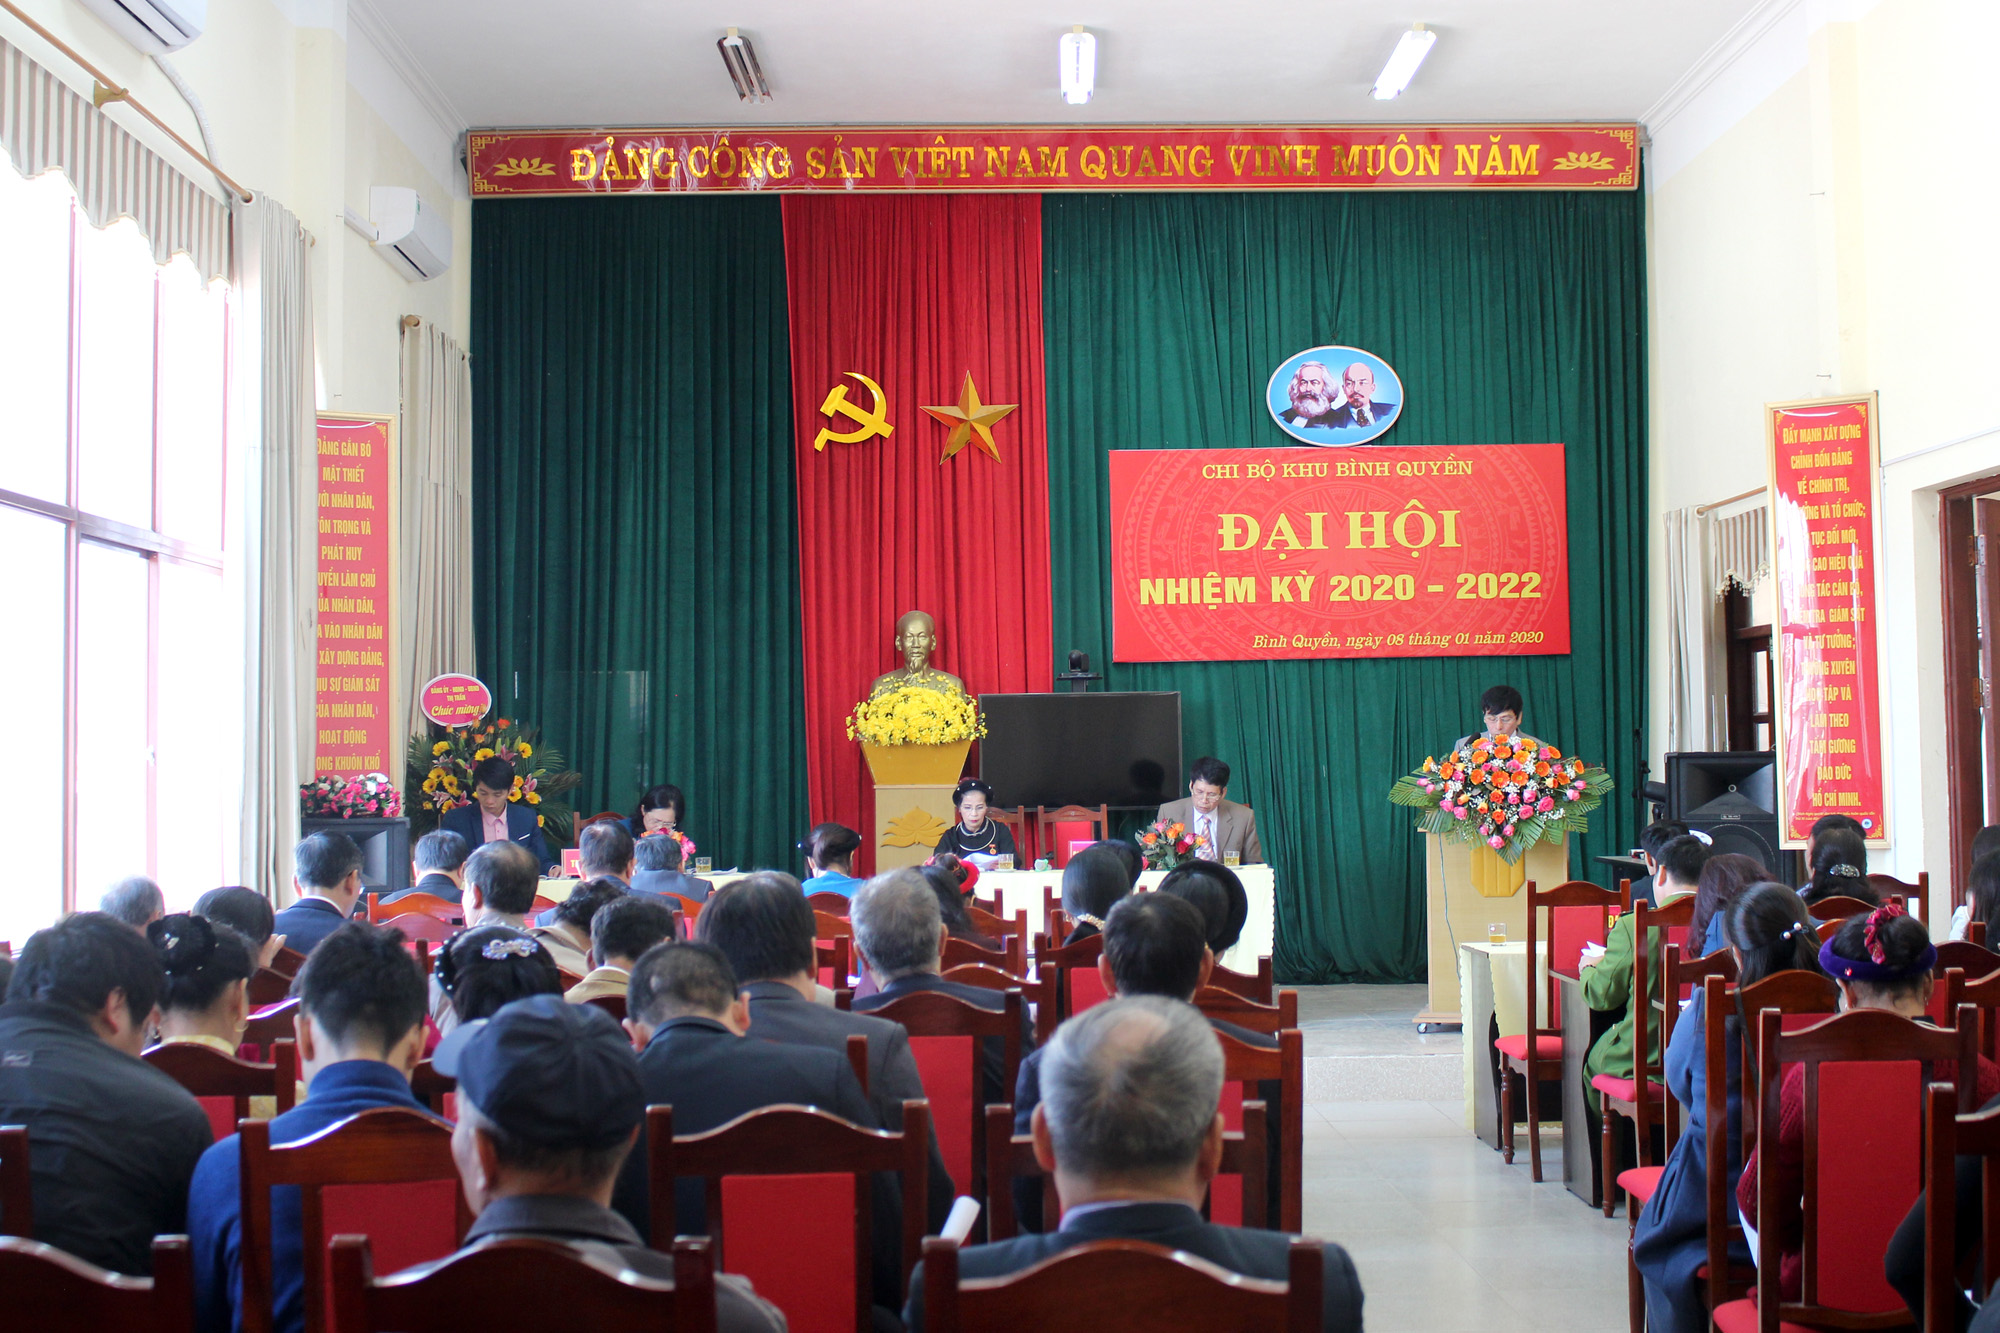 Đại hội chi bộ điểm khu Bình Quyền (thị trấn Bình Liêu, huyện Bình Liêu) diễn ra thành công vào ngày 9/1/2020